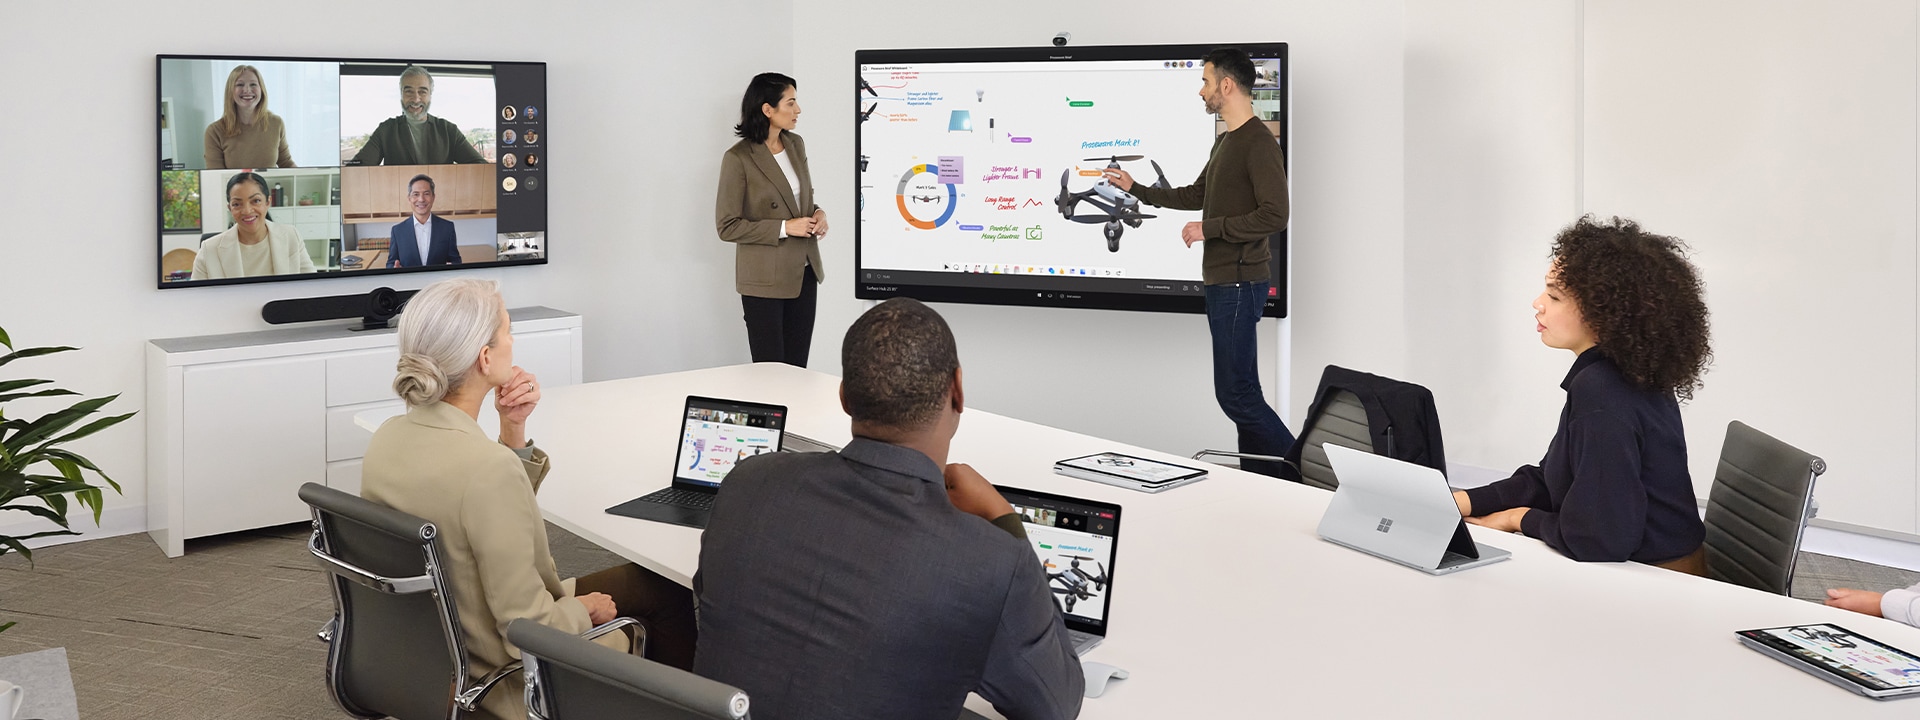 Dva kolegové spolupracují s pomocí zařízení Surface Hub 2S a současně vedle na stole vyřizují virtuální schůzku v Teams na zařízení Surface Laptop